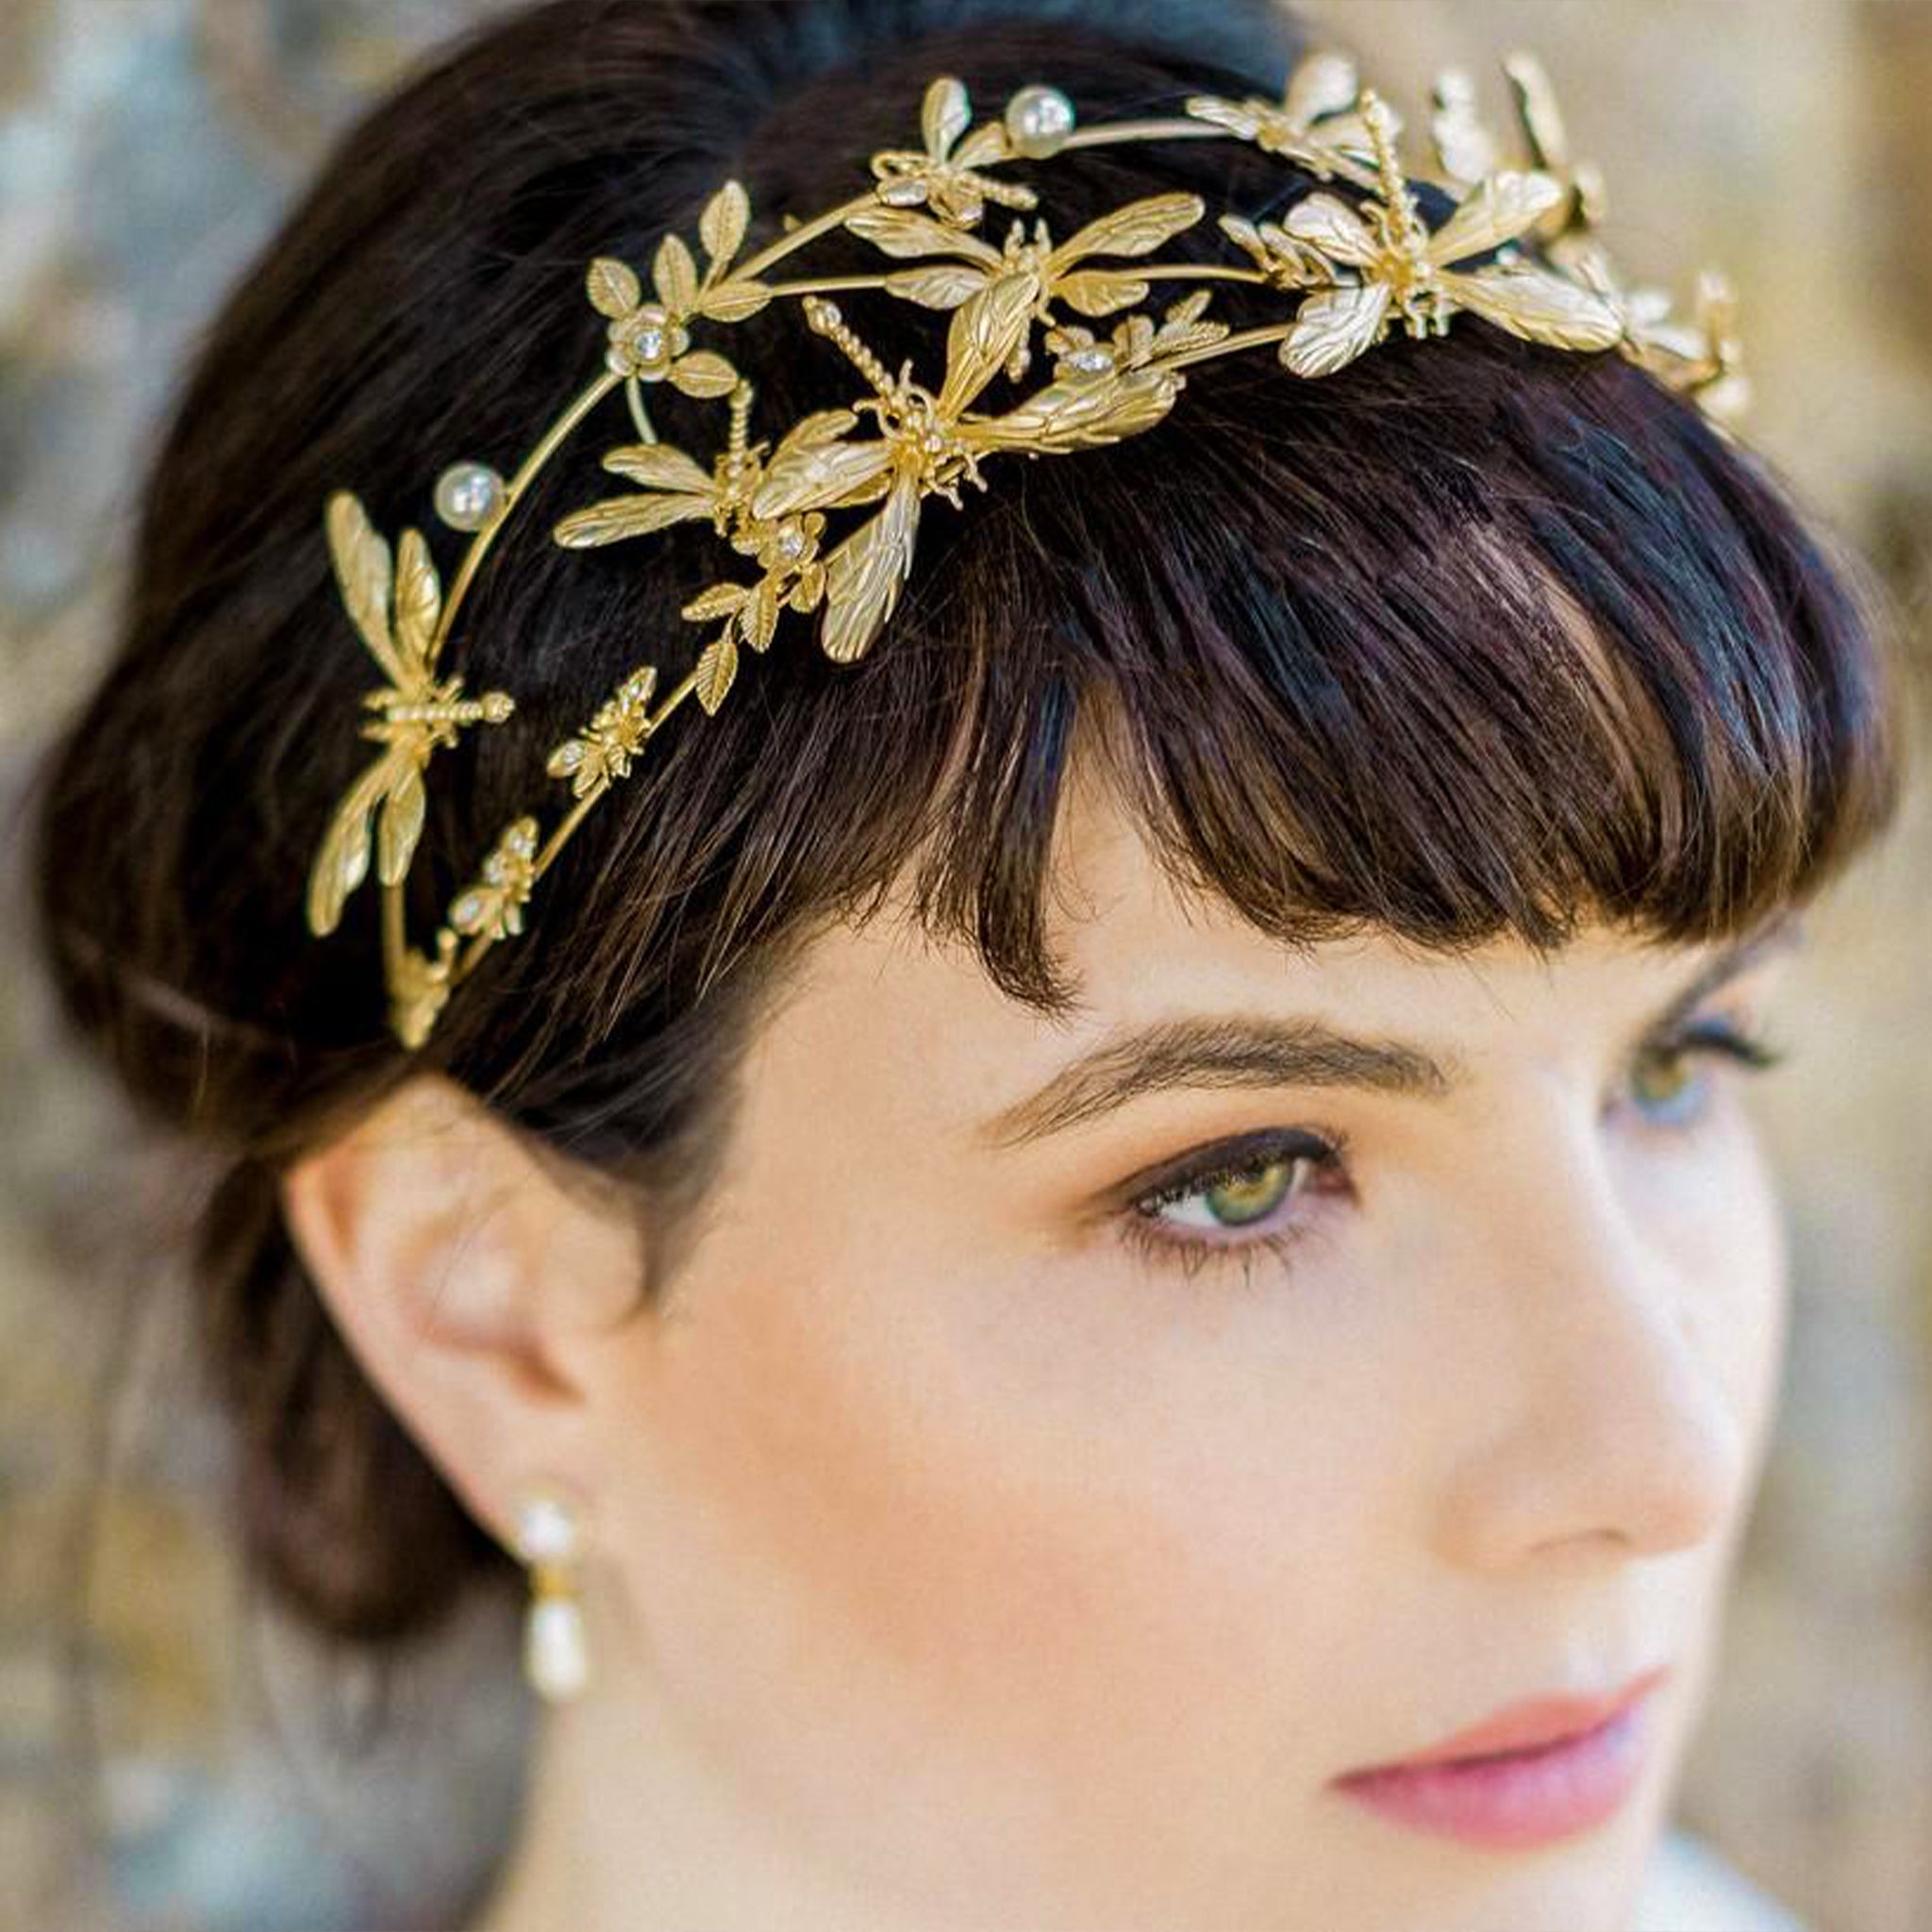 Dragonfly, Gold Wedding Headpiece